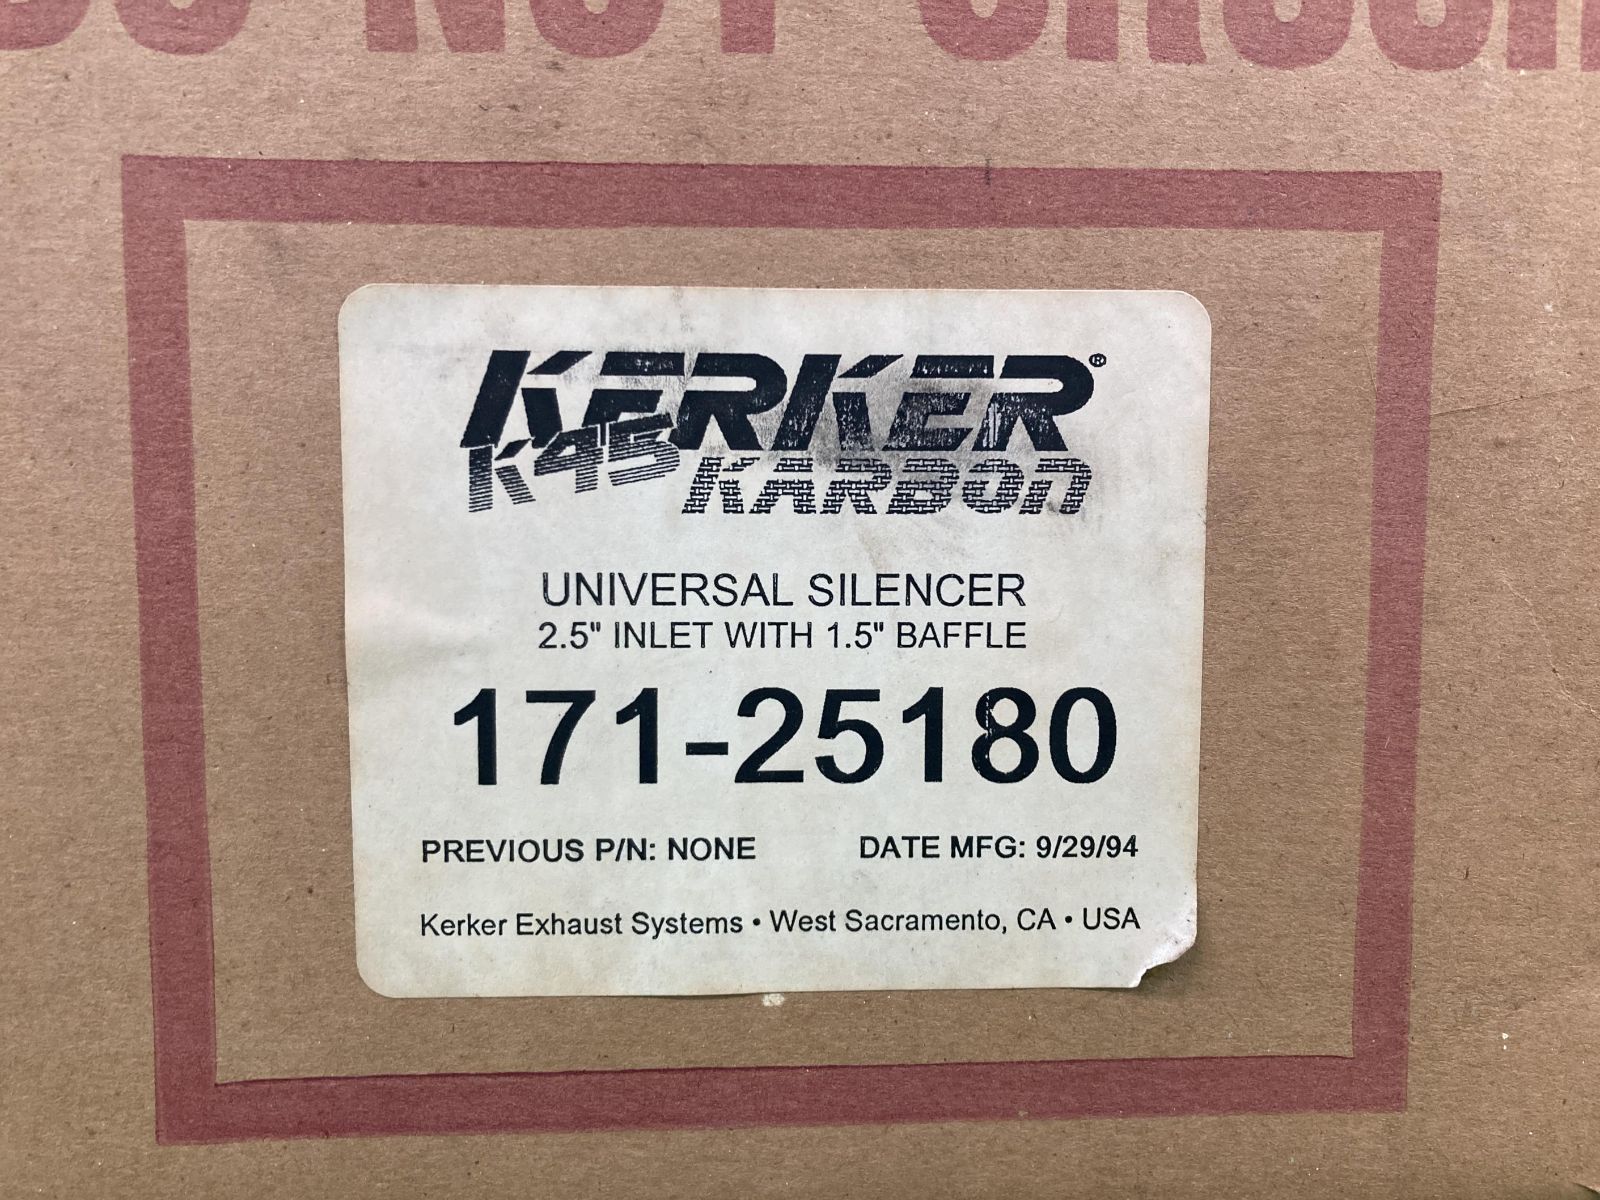 KERKER製 サイレンサーマフラー 171-25180 社外 新品 K45 カーボン ユニバーサルサイレンサー 廃盤 未使用 マフラーバンド付き  CB400SF X4